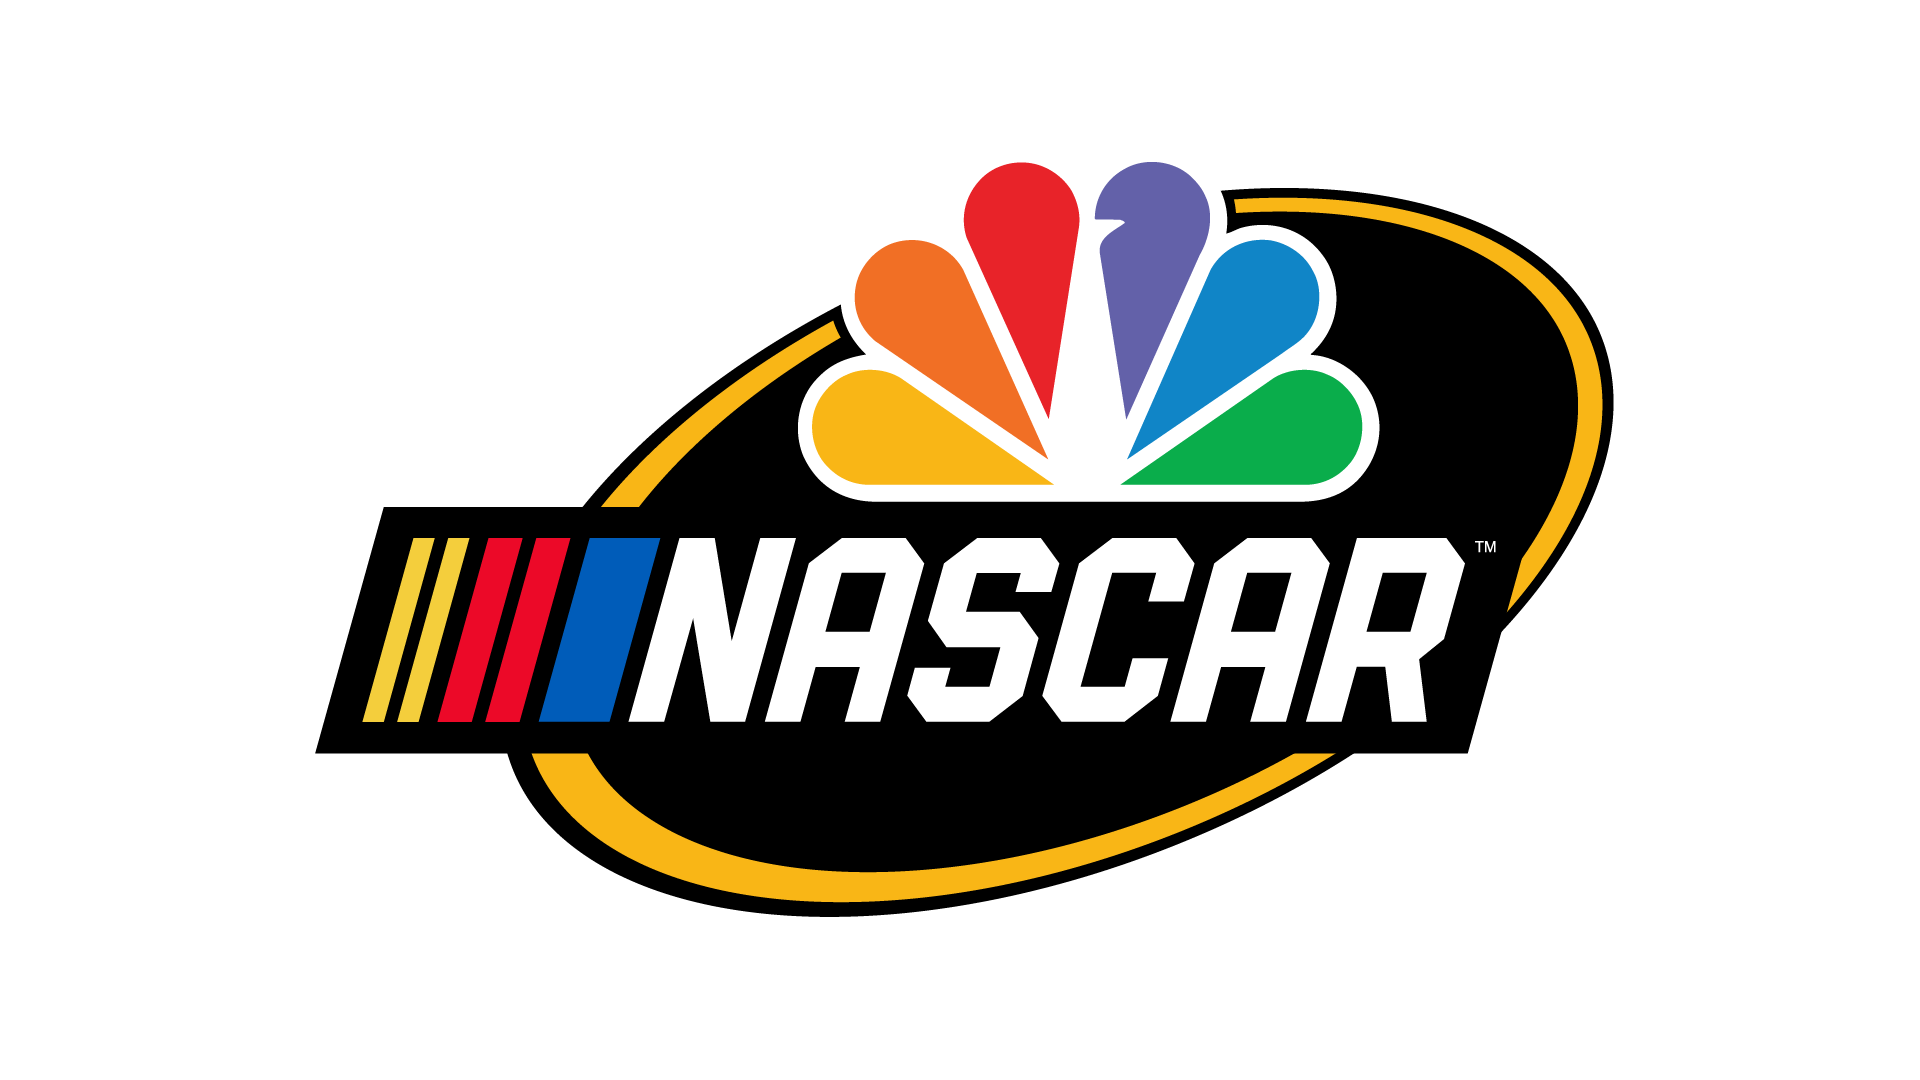 Nascar on NBC Logo